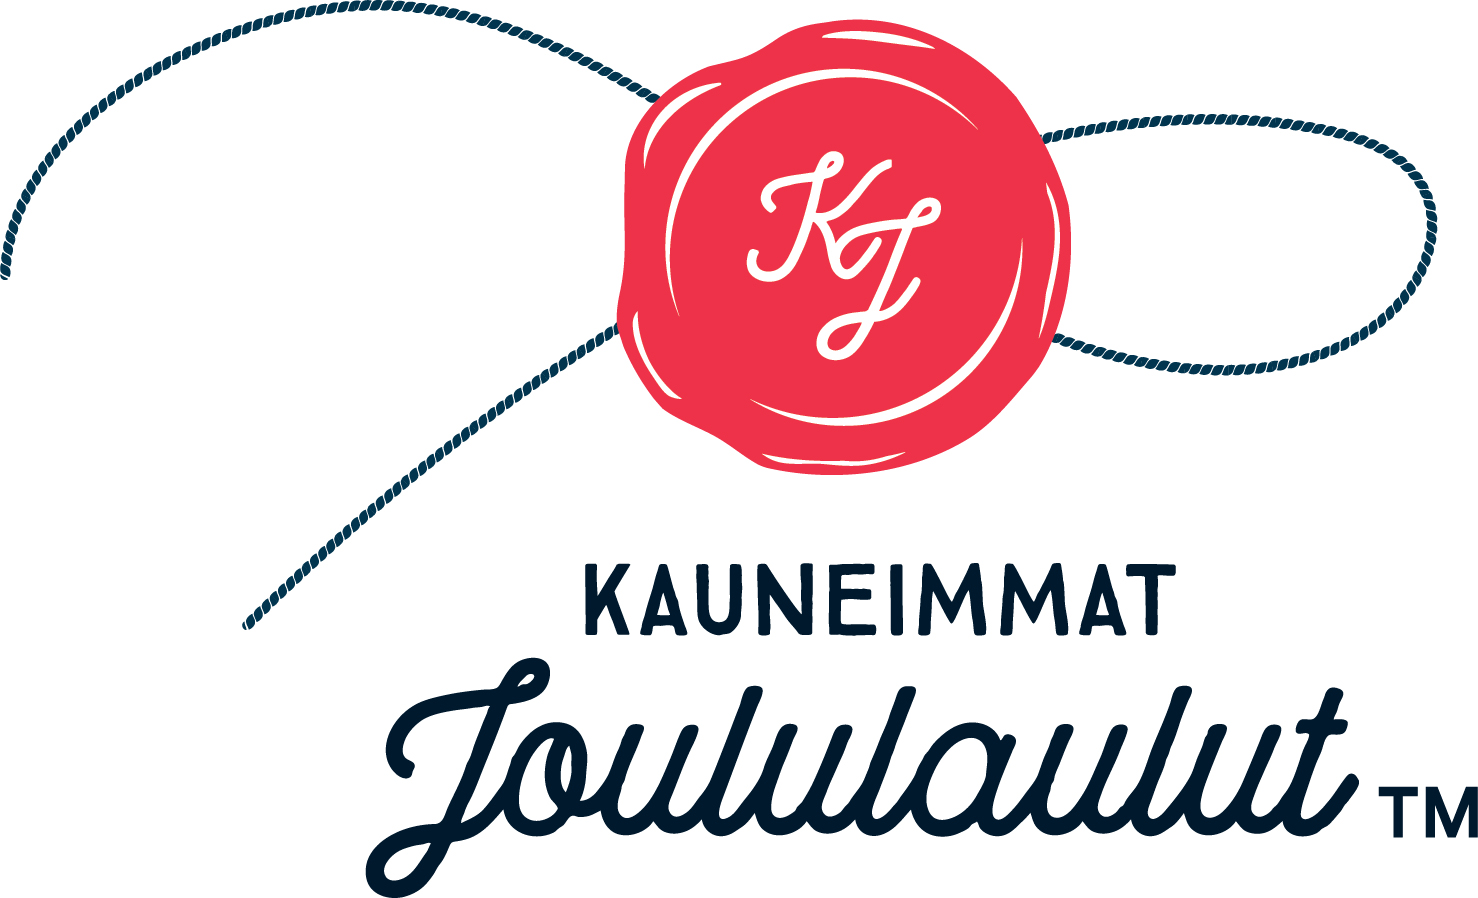 Kauneimmat Joululaulut -logo.